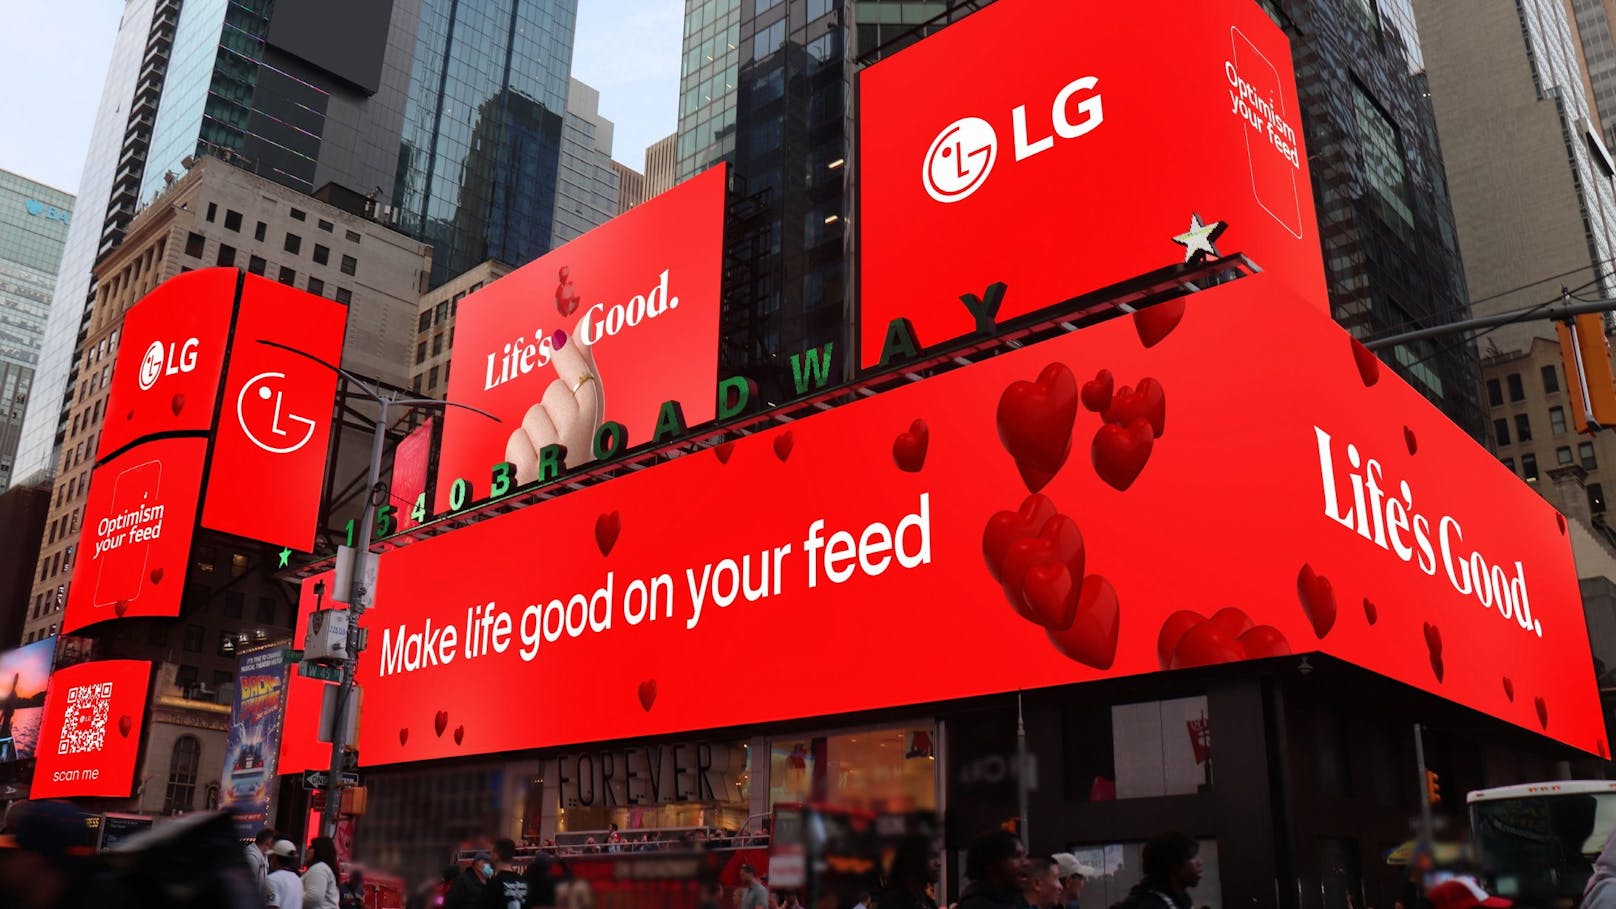 Die weltweite Kampagne ist Teil der "Life’s Good"-Kampagne, die LG letztes Jahr gestartet hat und den Menschen Zuversicht geben will.